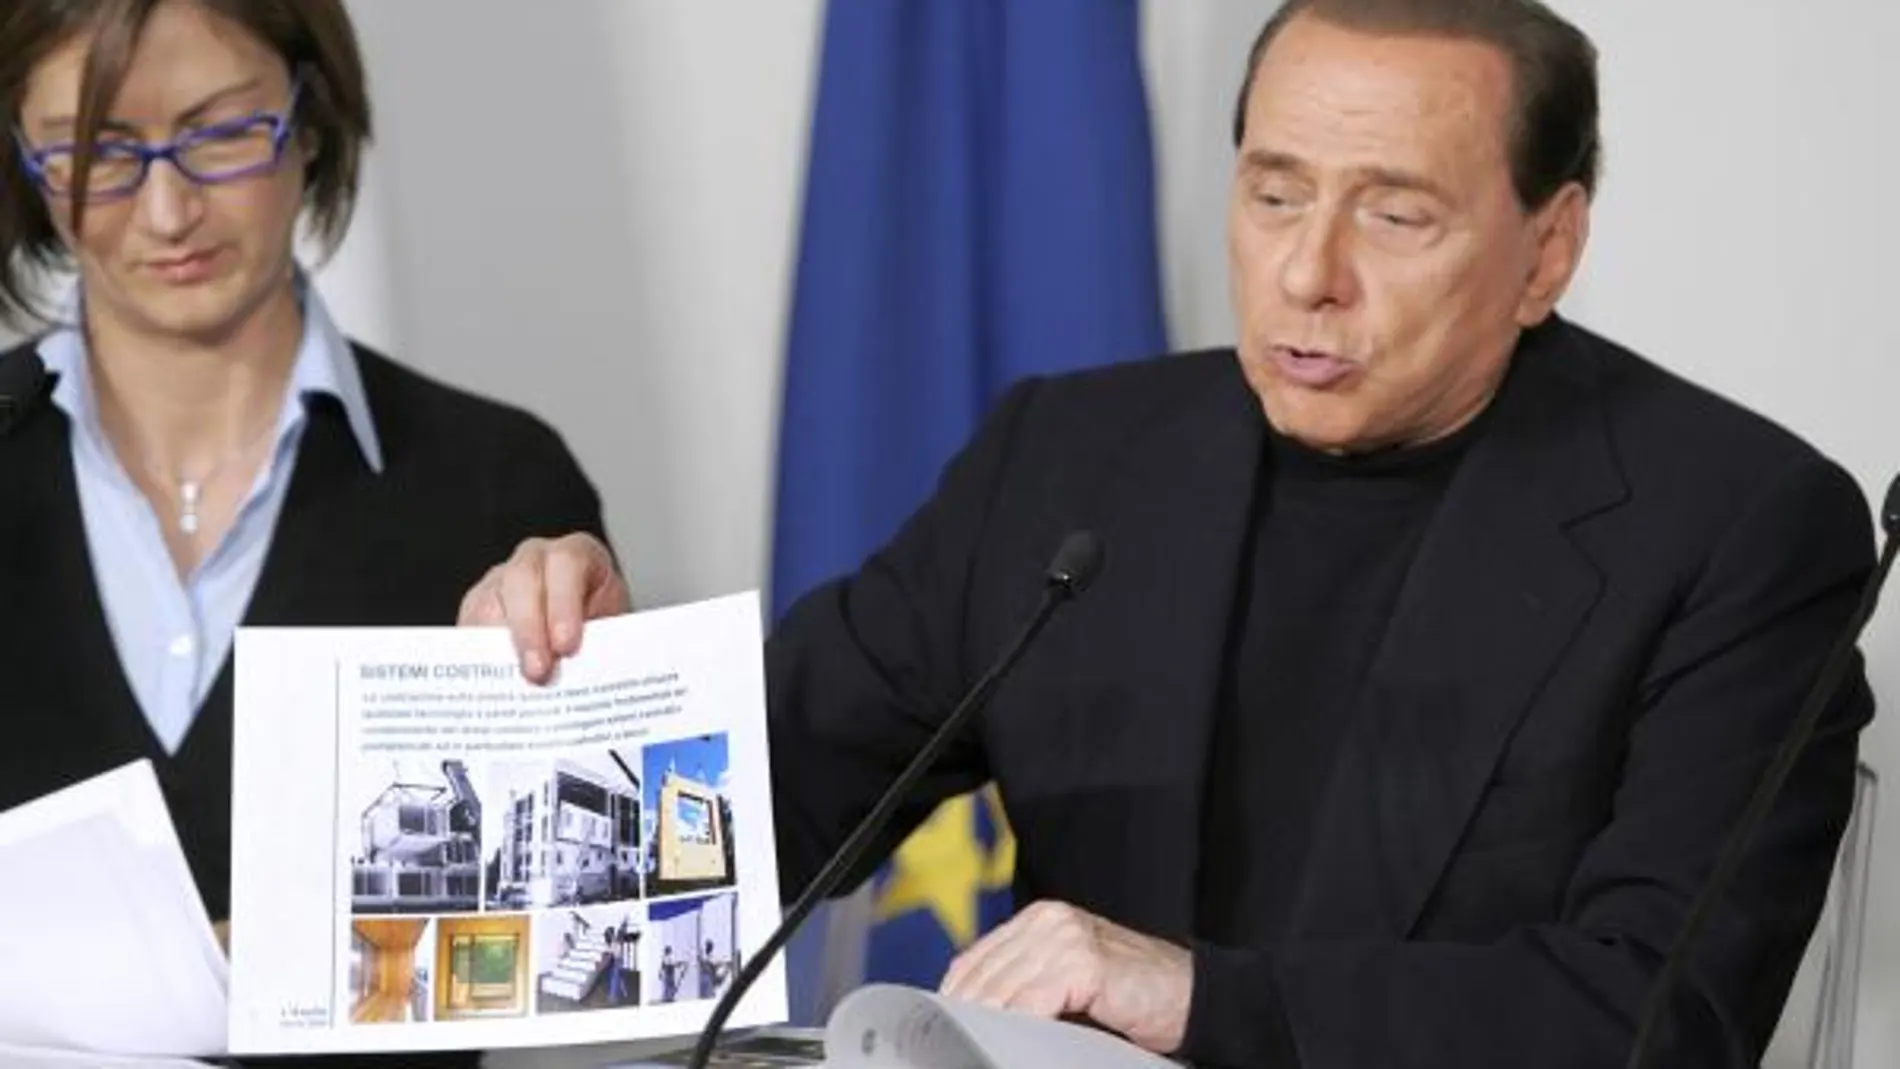 Berlusconi premia a L'Aquila con la próxima cumbre del G-8 en Italia